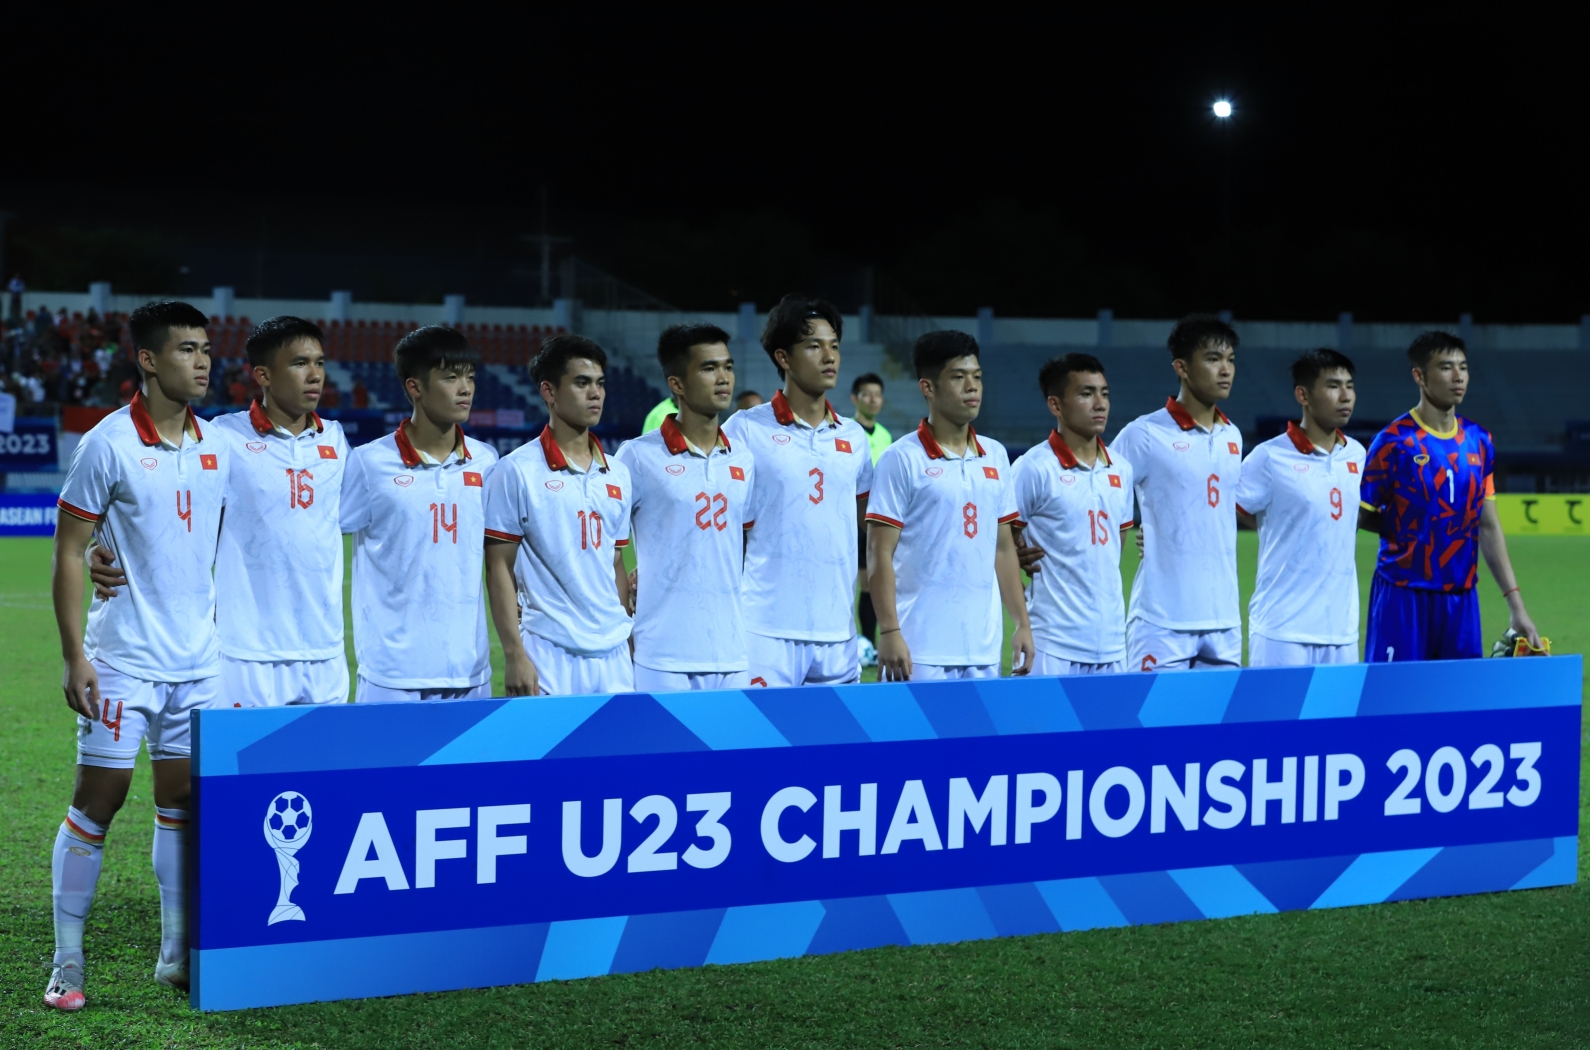 Tuyển thủ U23 Việt Nam suýt bị đuổi vì thái độ đá penalty